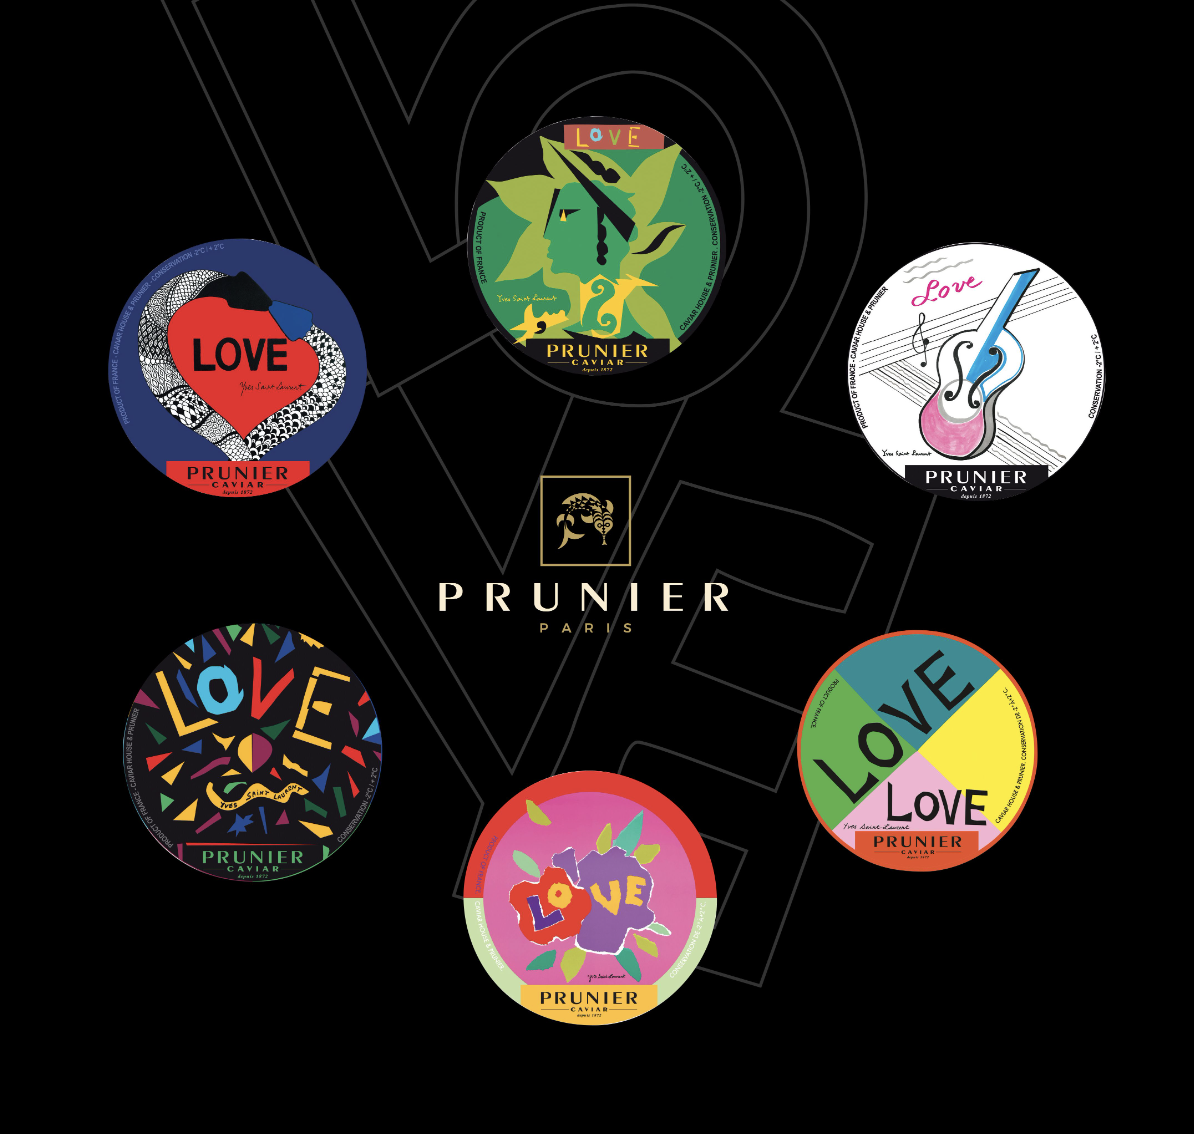 Prunier x Yves Saint Laurent - Editions limitées